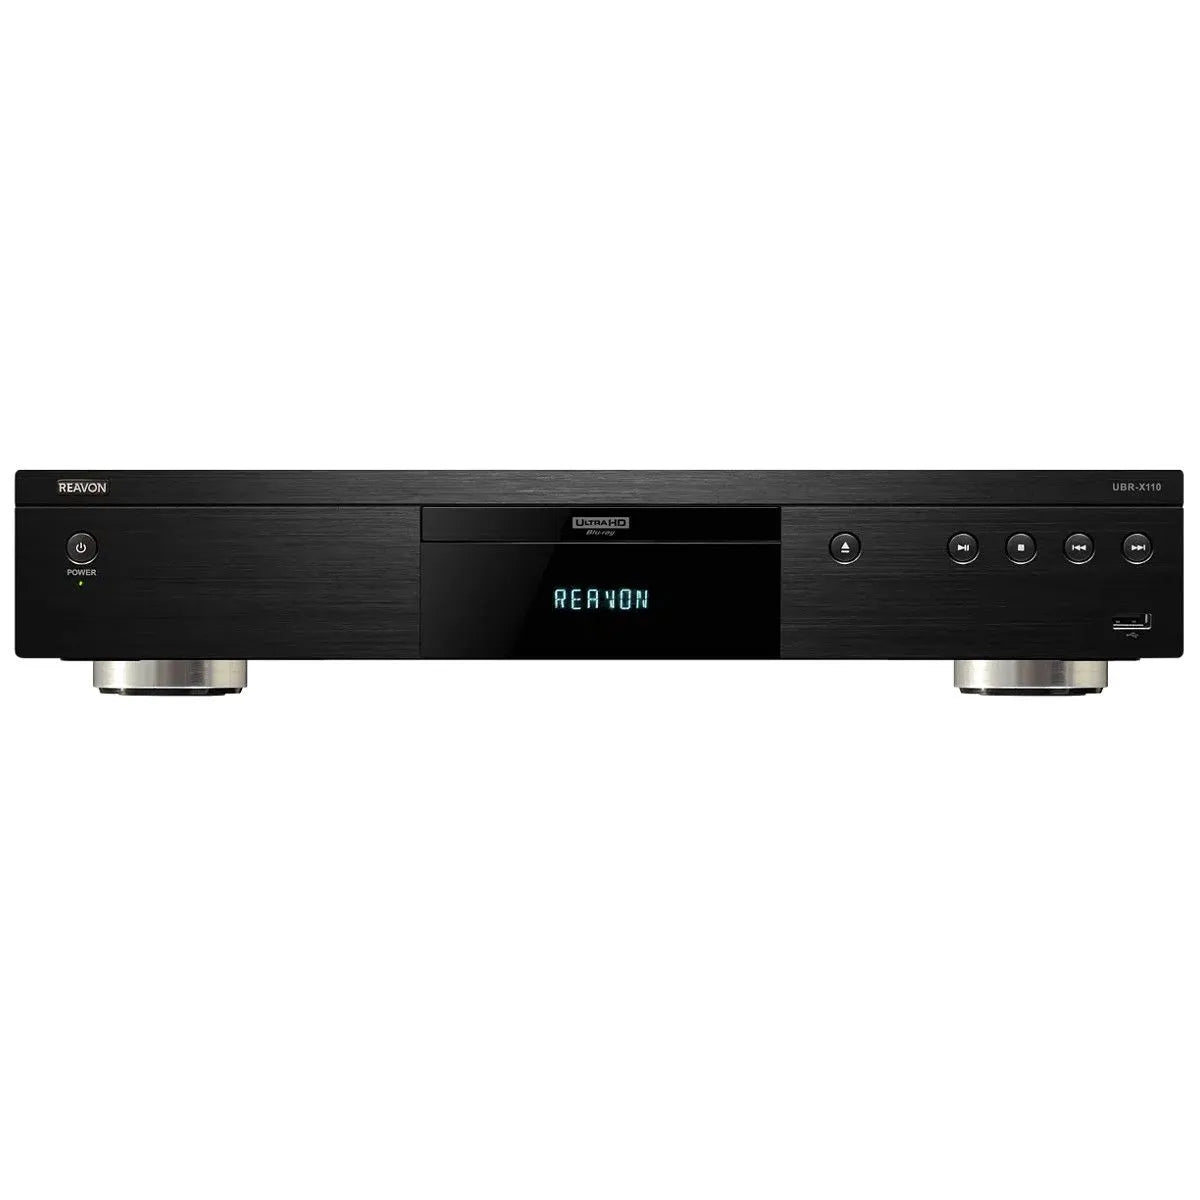 UBR-X110 4K 超高清通用光盘播放器，带 SACD 播放功能